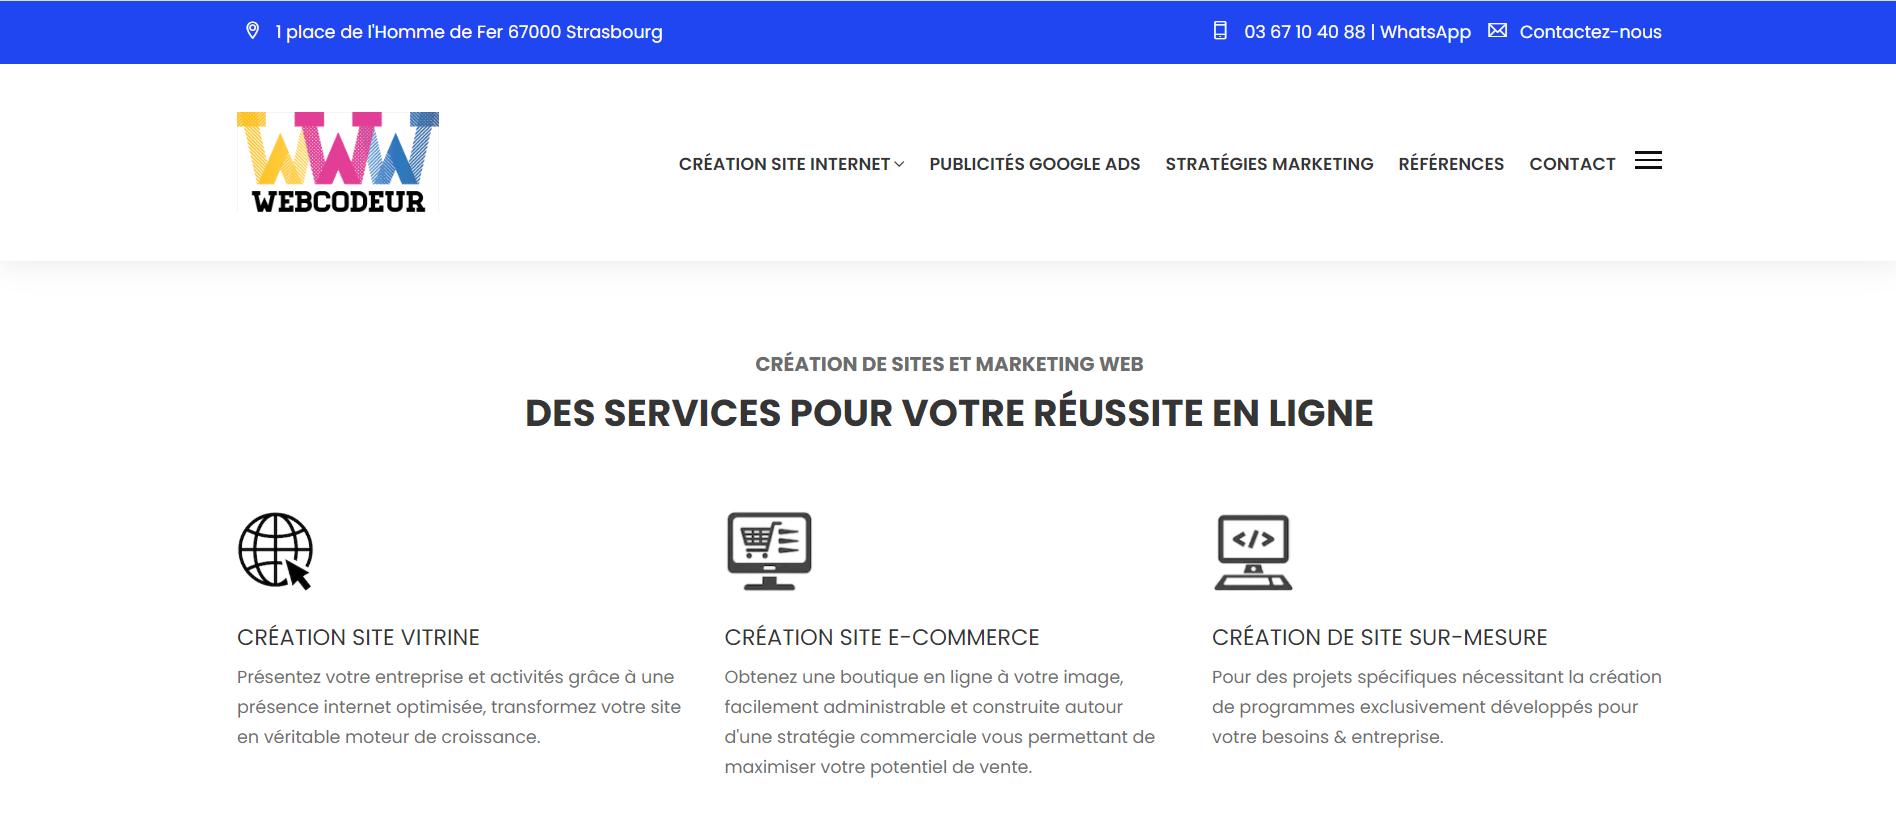  WebCodeur – Agence Web, Création de Sites, Référencement - Agence Web à Strasbourg 